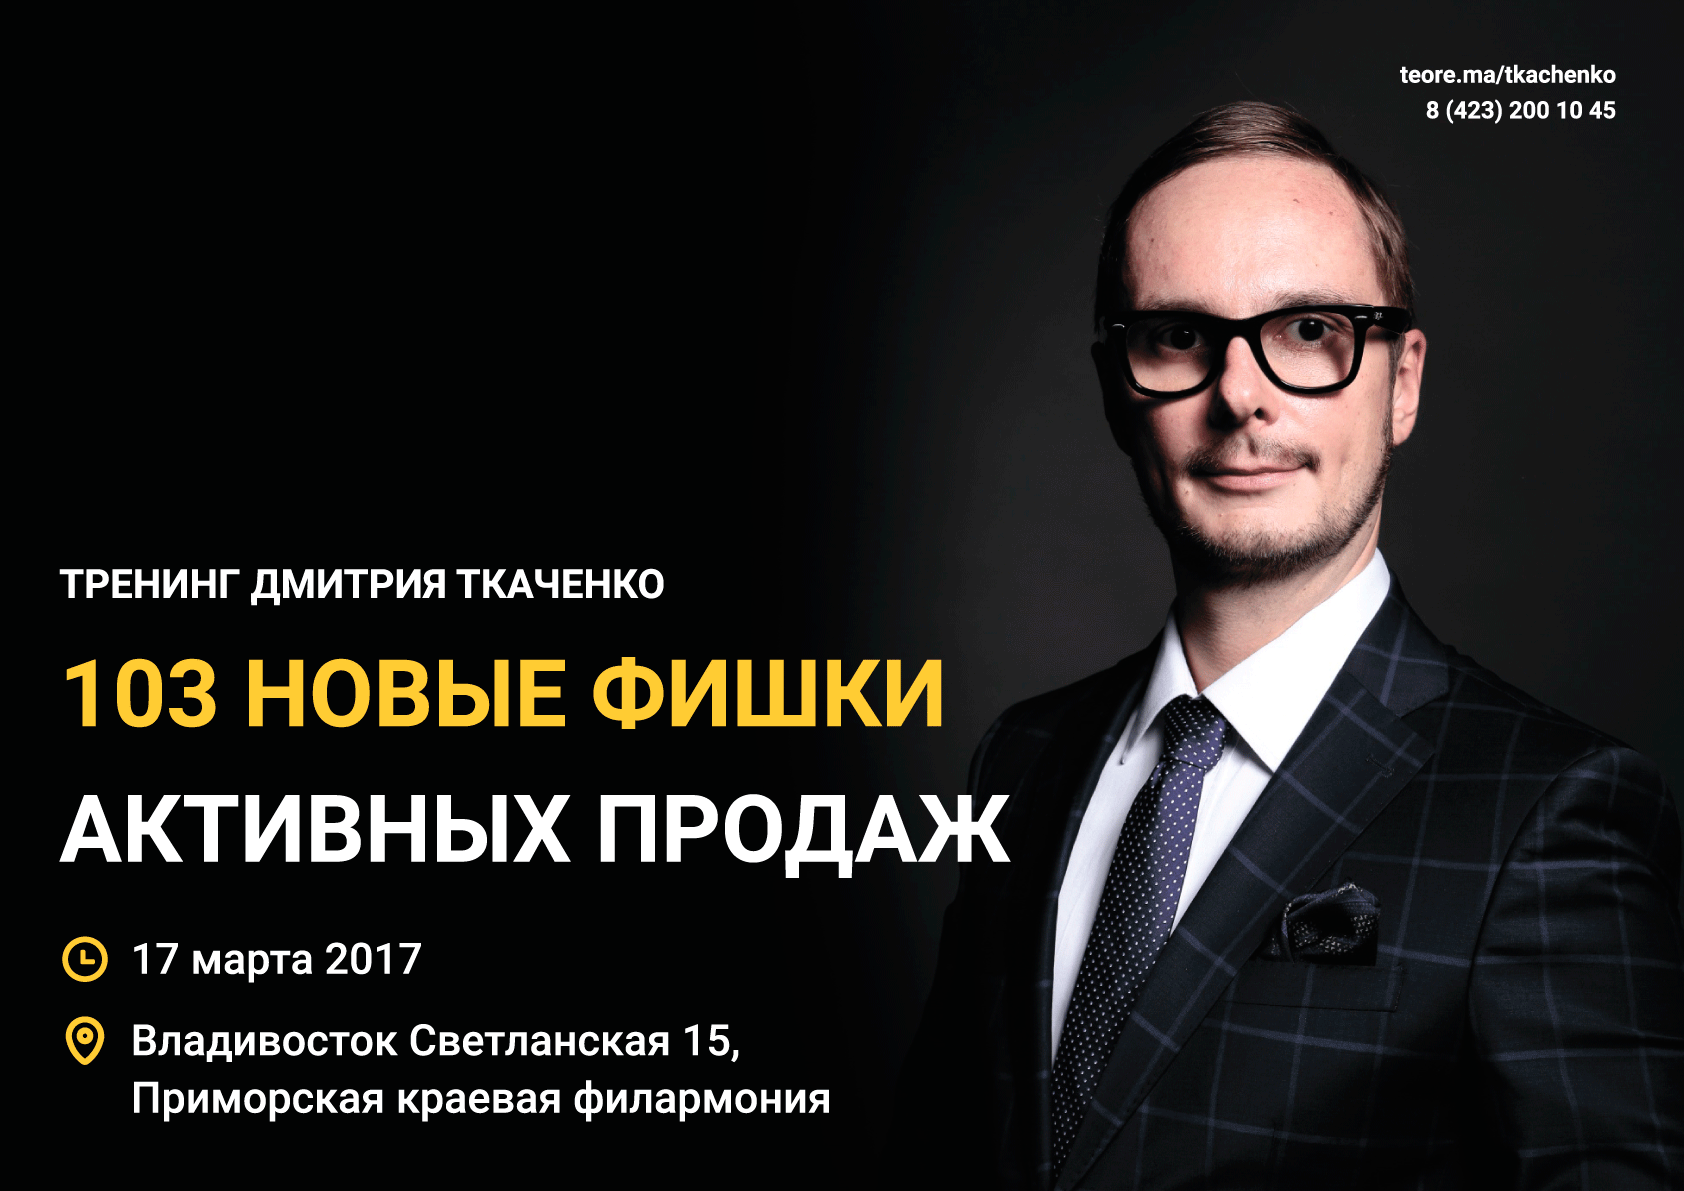 17 марта Большой зал  Дмитрий Ткаченко "103 новые фишки активных продаж"